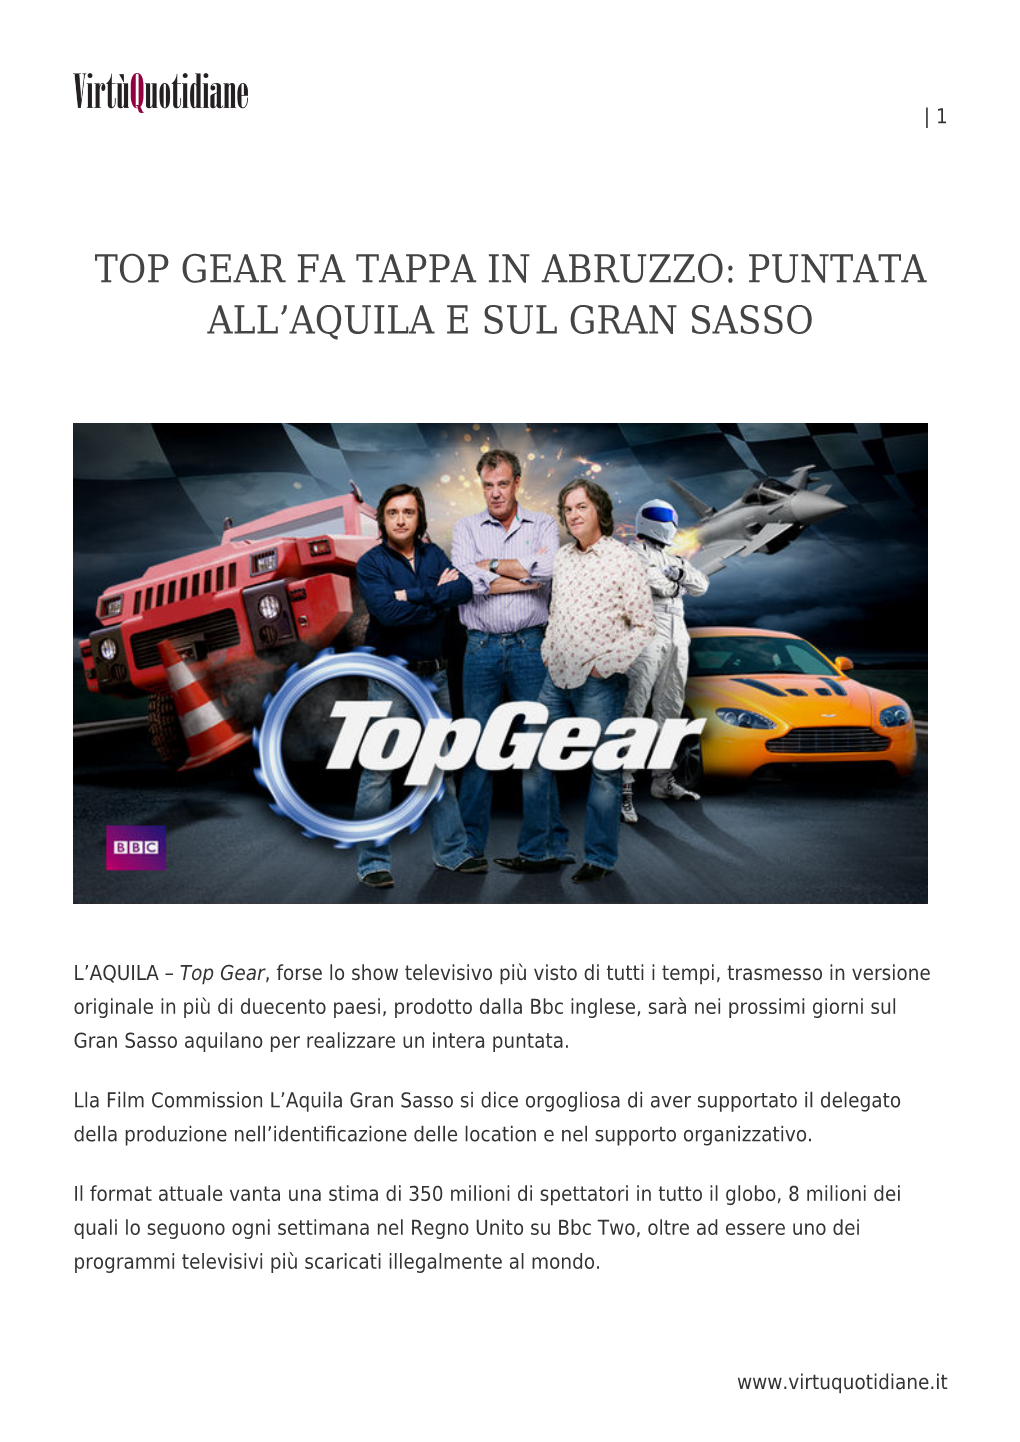 Top Gear Fa Tappa in Abruzzo: Puntata All’Aquila E Sul Gran Sasso